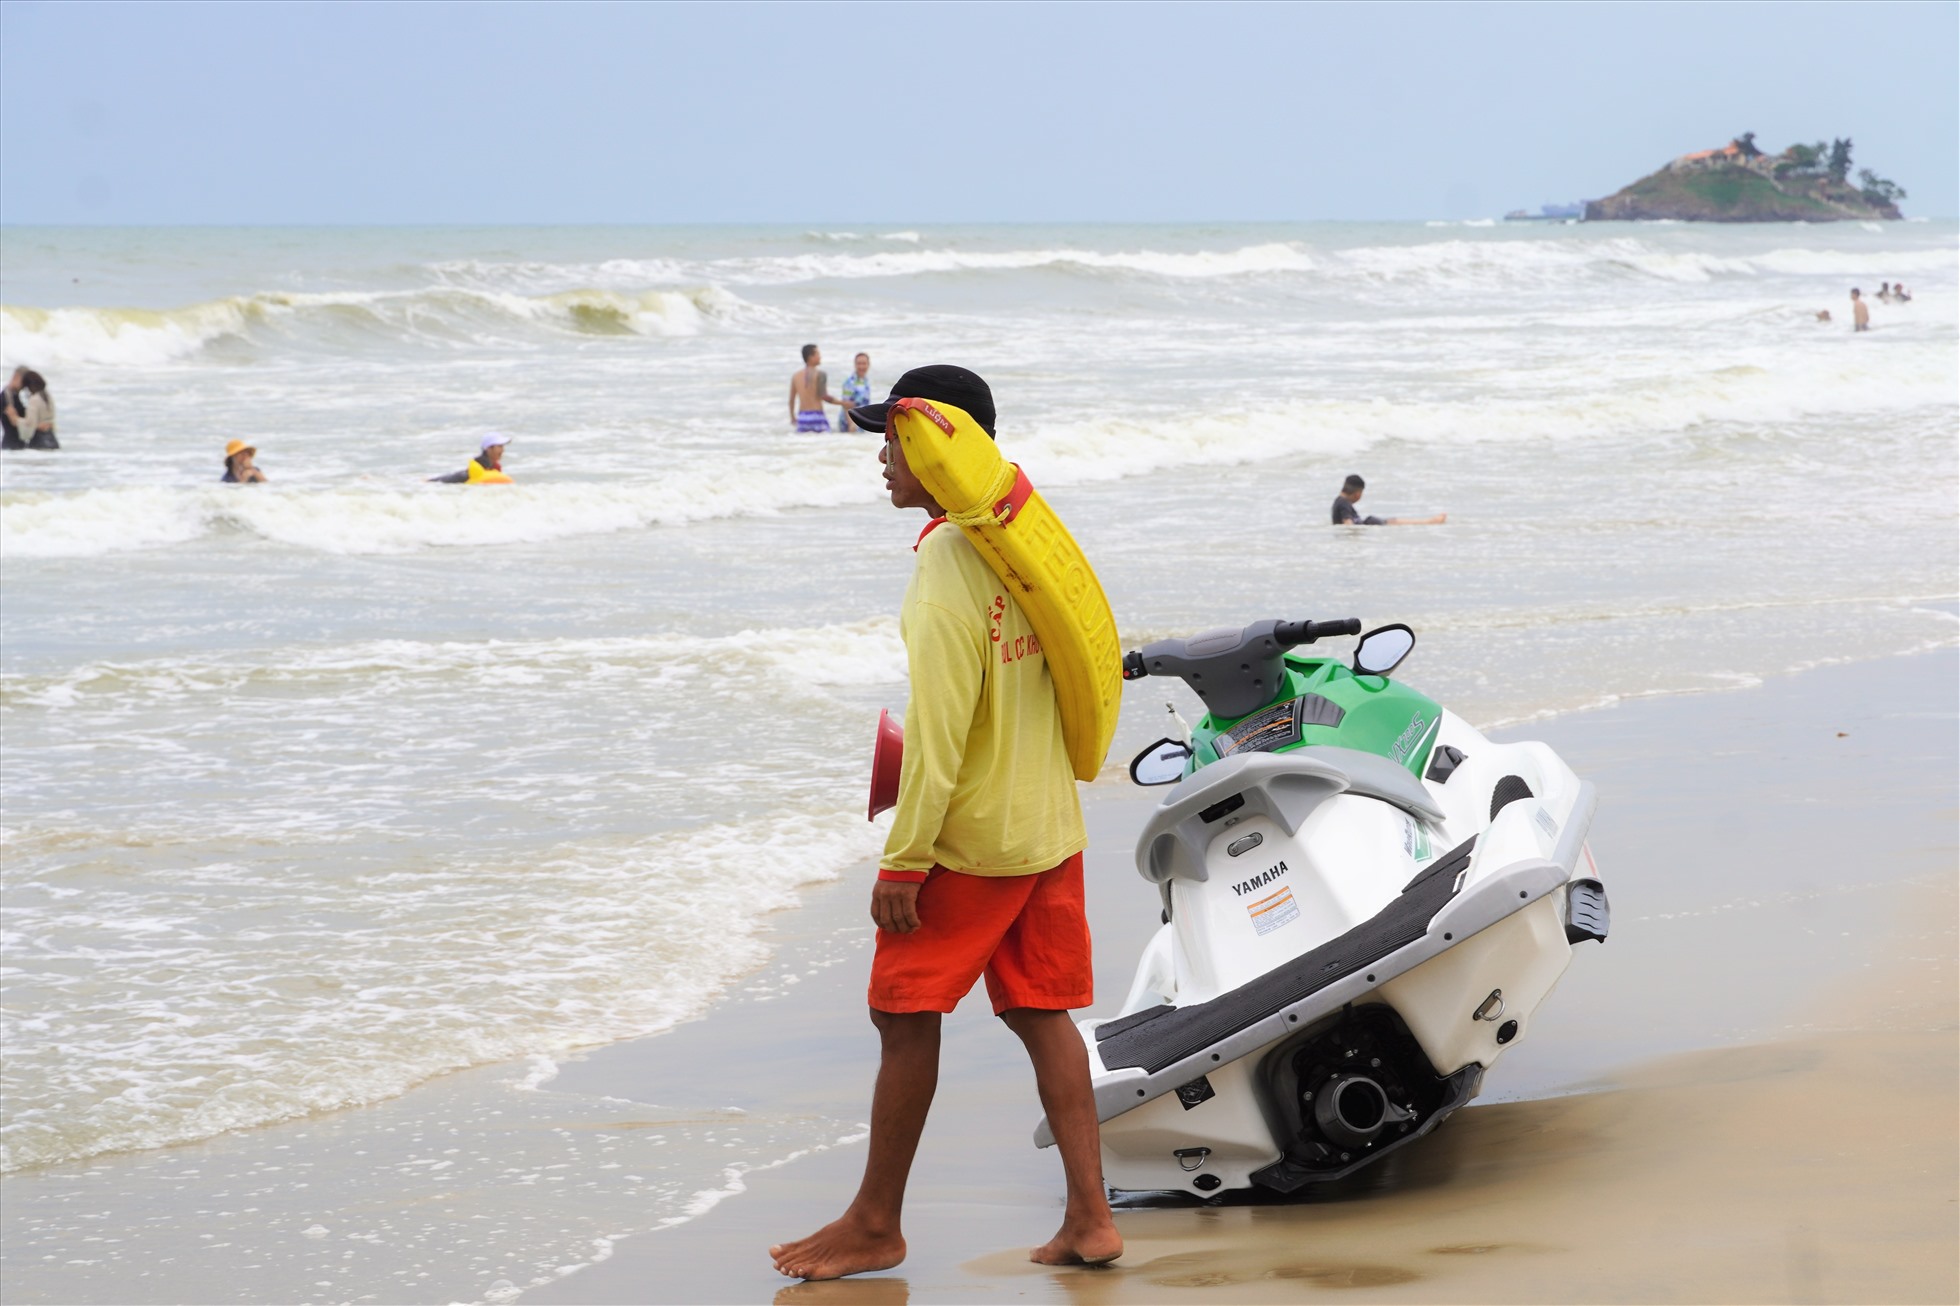 Cứu hộ viên Trần Văn Truyền tại một điểm trực ao xoáy, phải luôn theo dõi để hướng dẫn người tắm biển rời khu vực nguy hiểm. Ảnh: Thành An